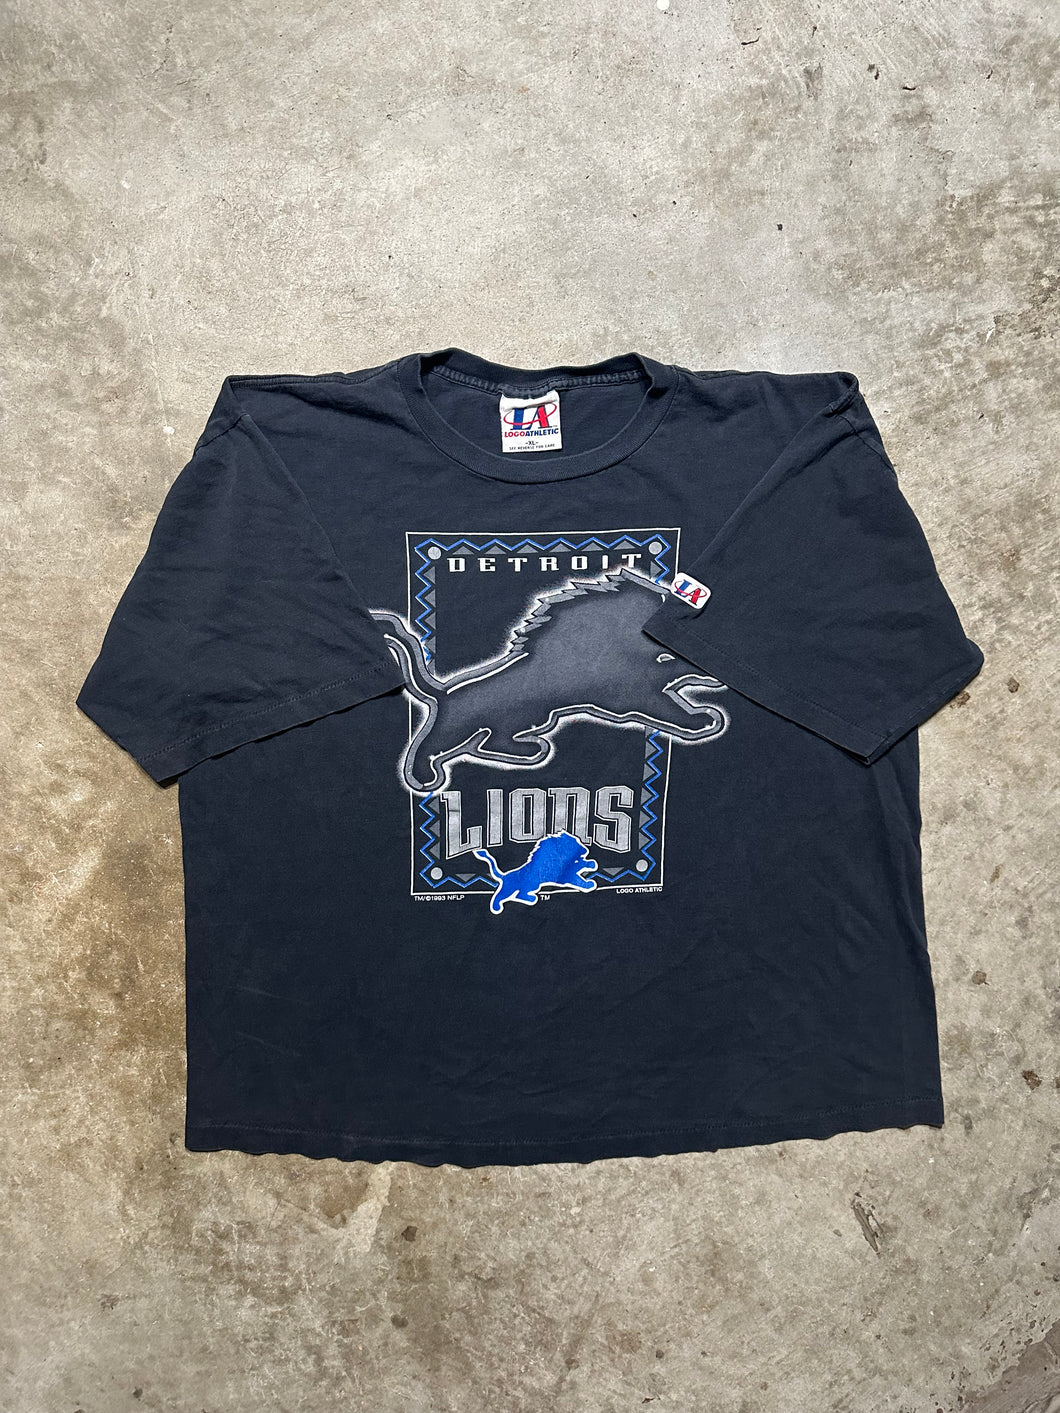 Vintage 1993 Detroit Lions Tee Shirt